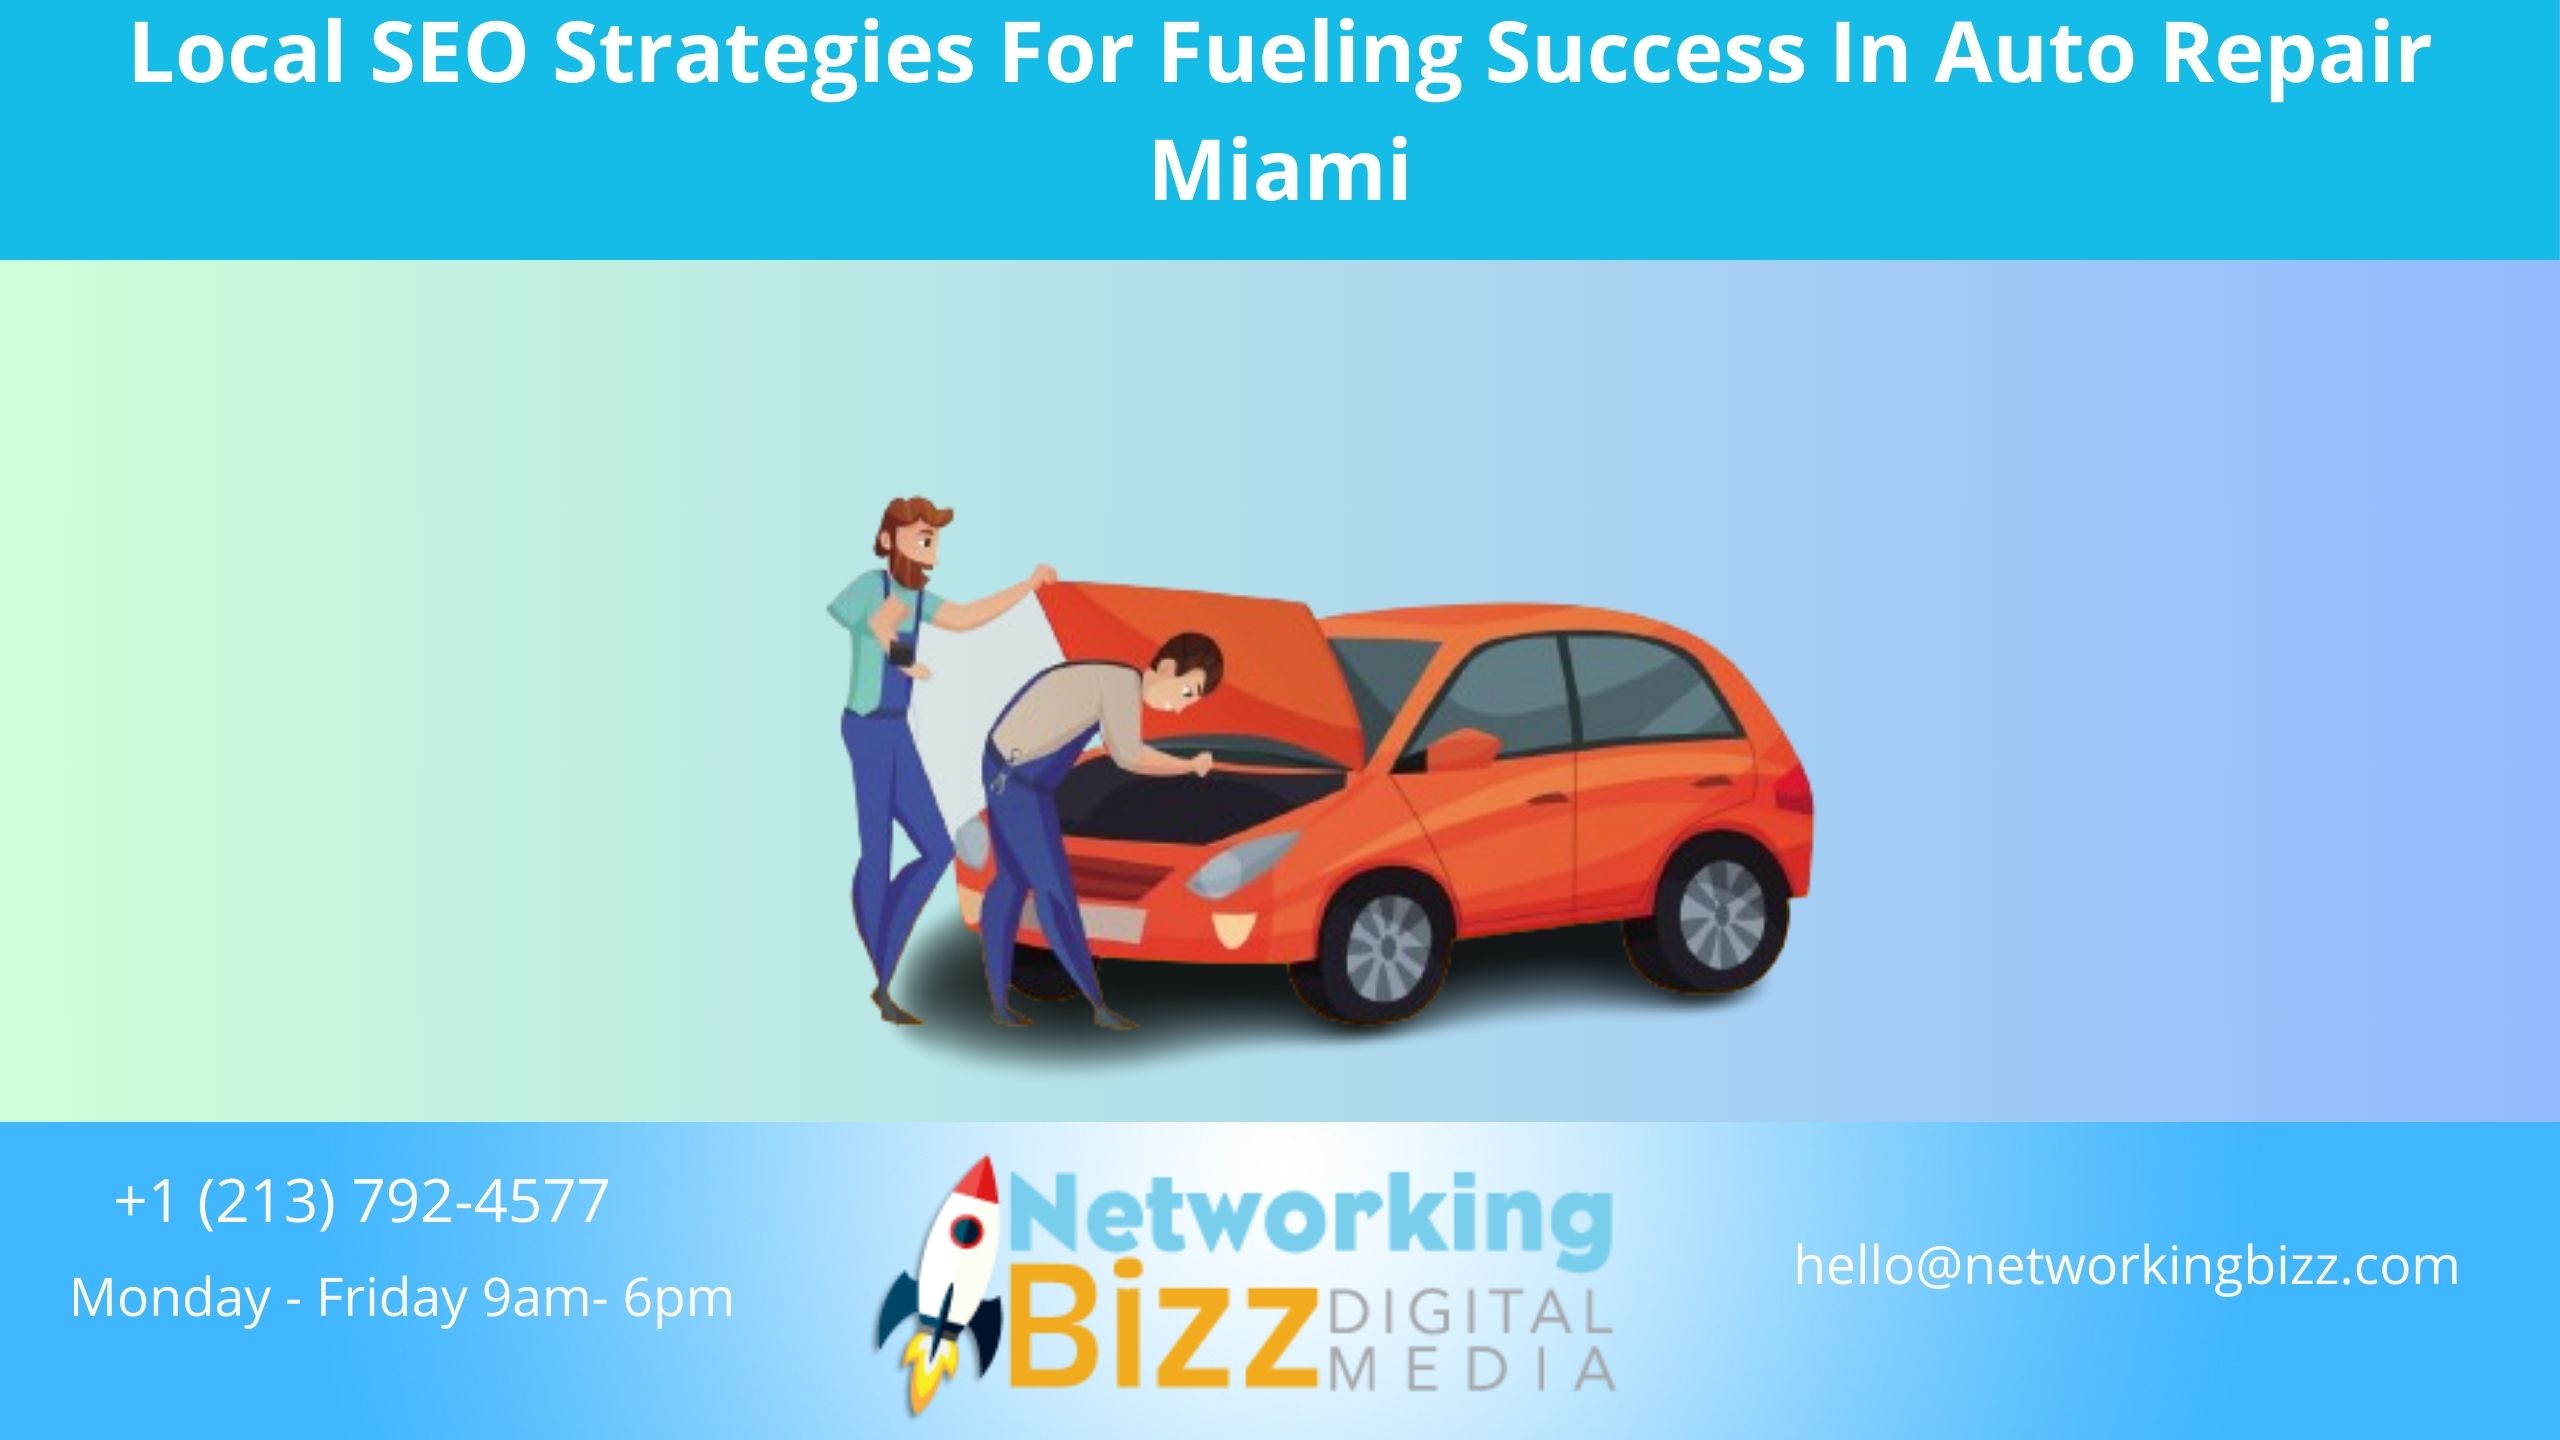 Local SEO Strategies For Fueling Success In Auto Repair Miami